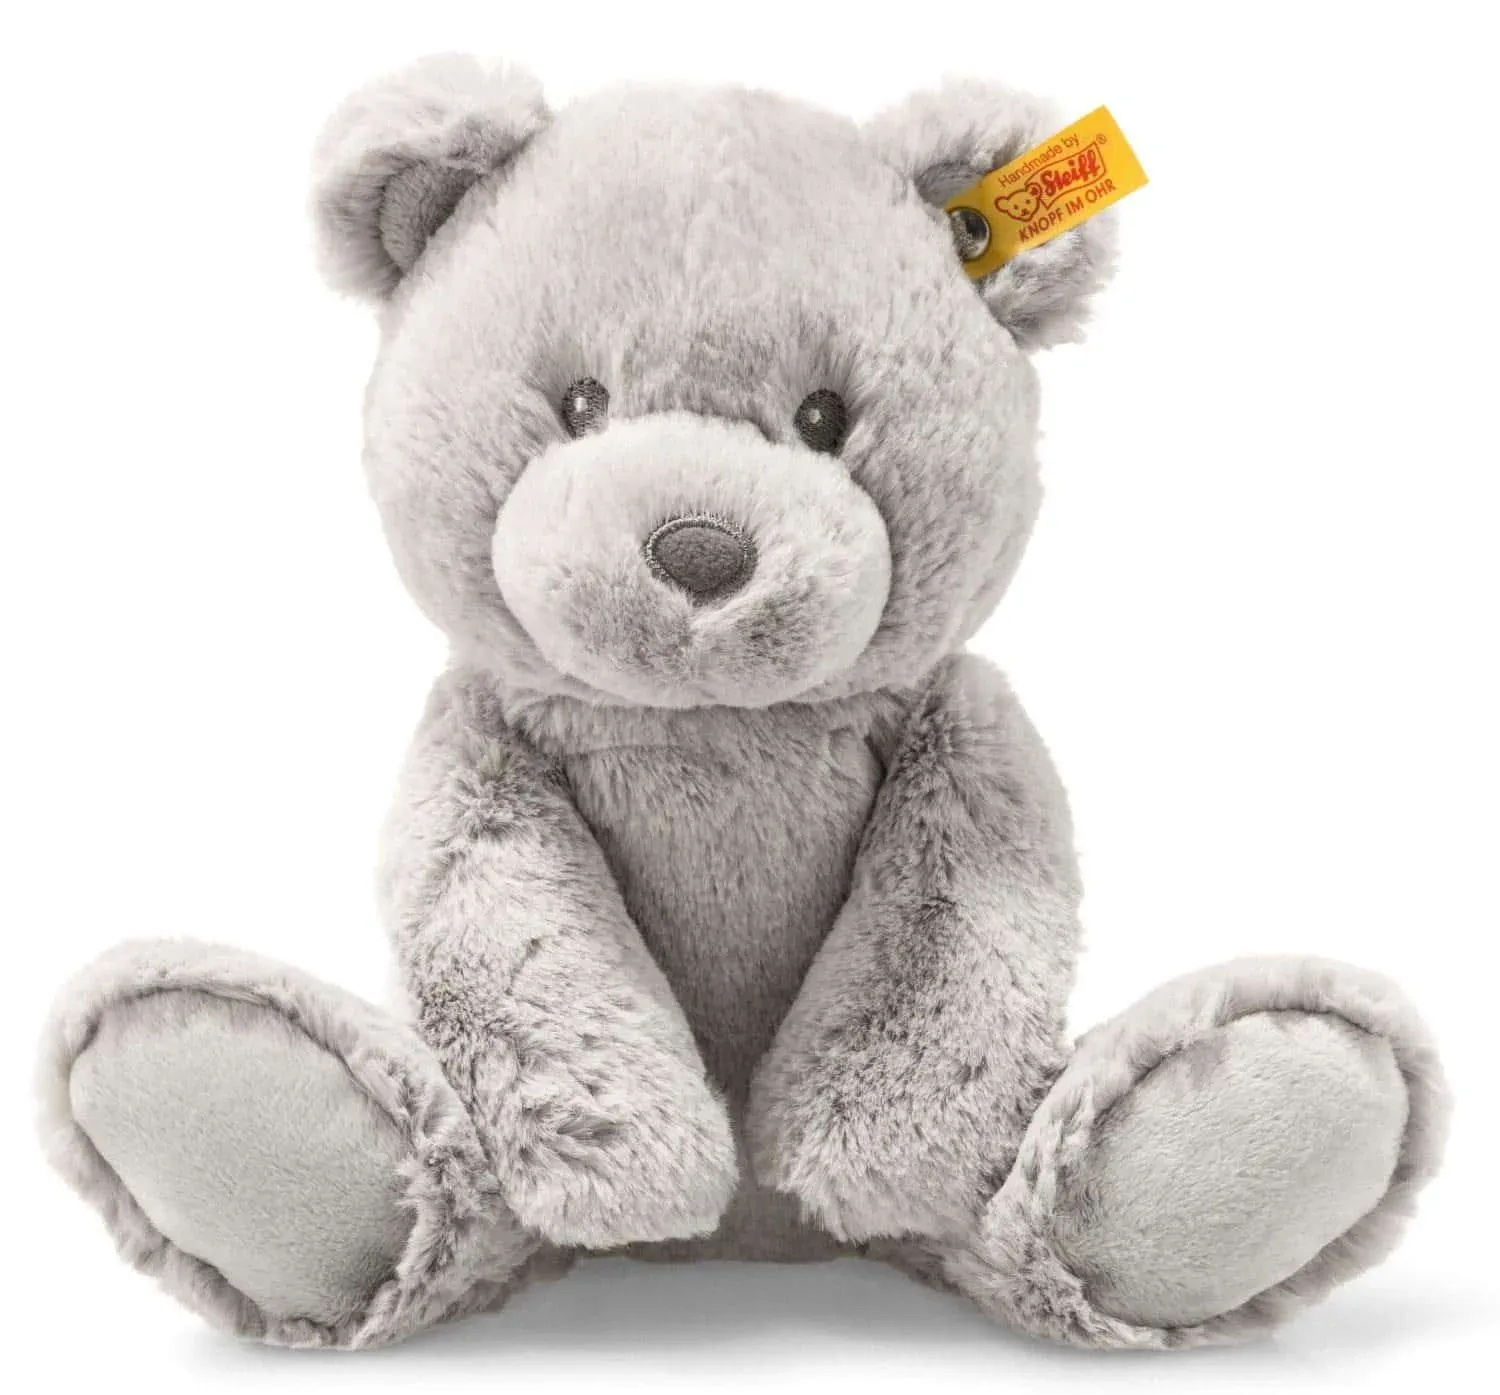 Soft grey Bearzy Teddy Bear best for cuddling.